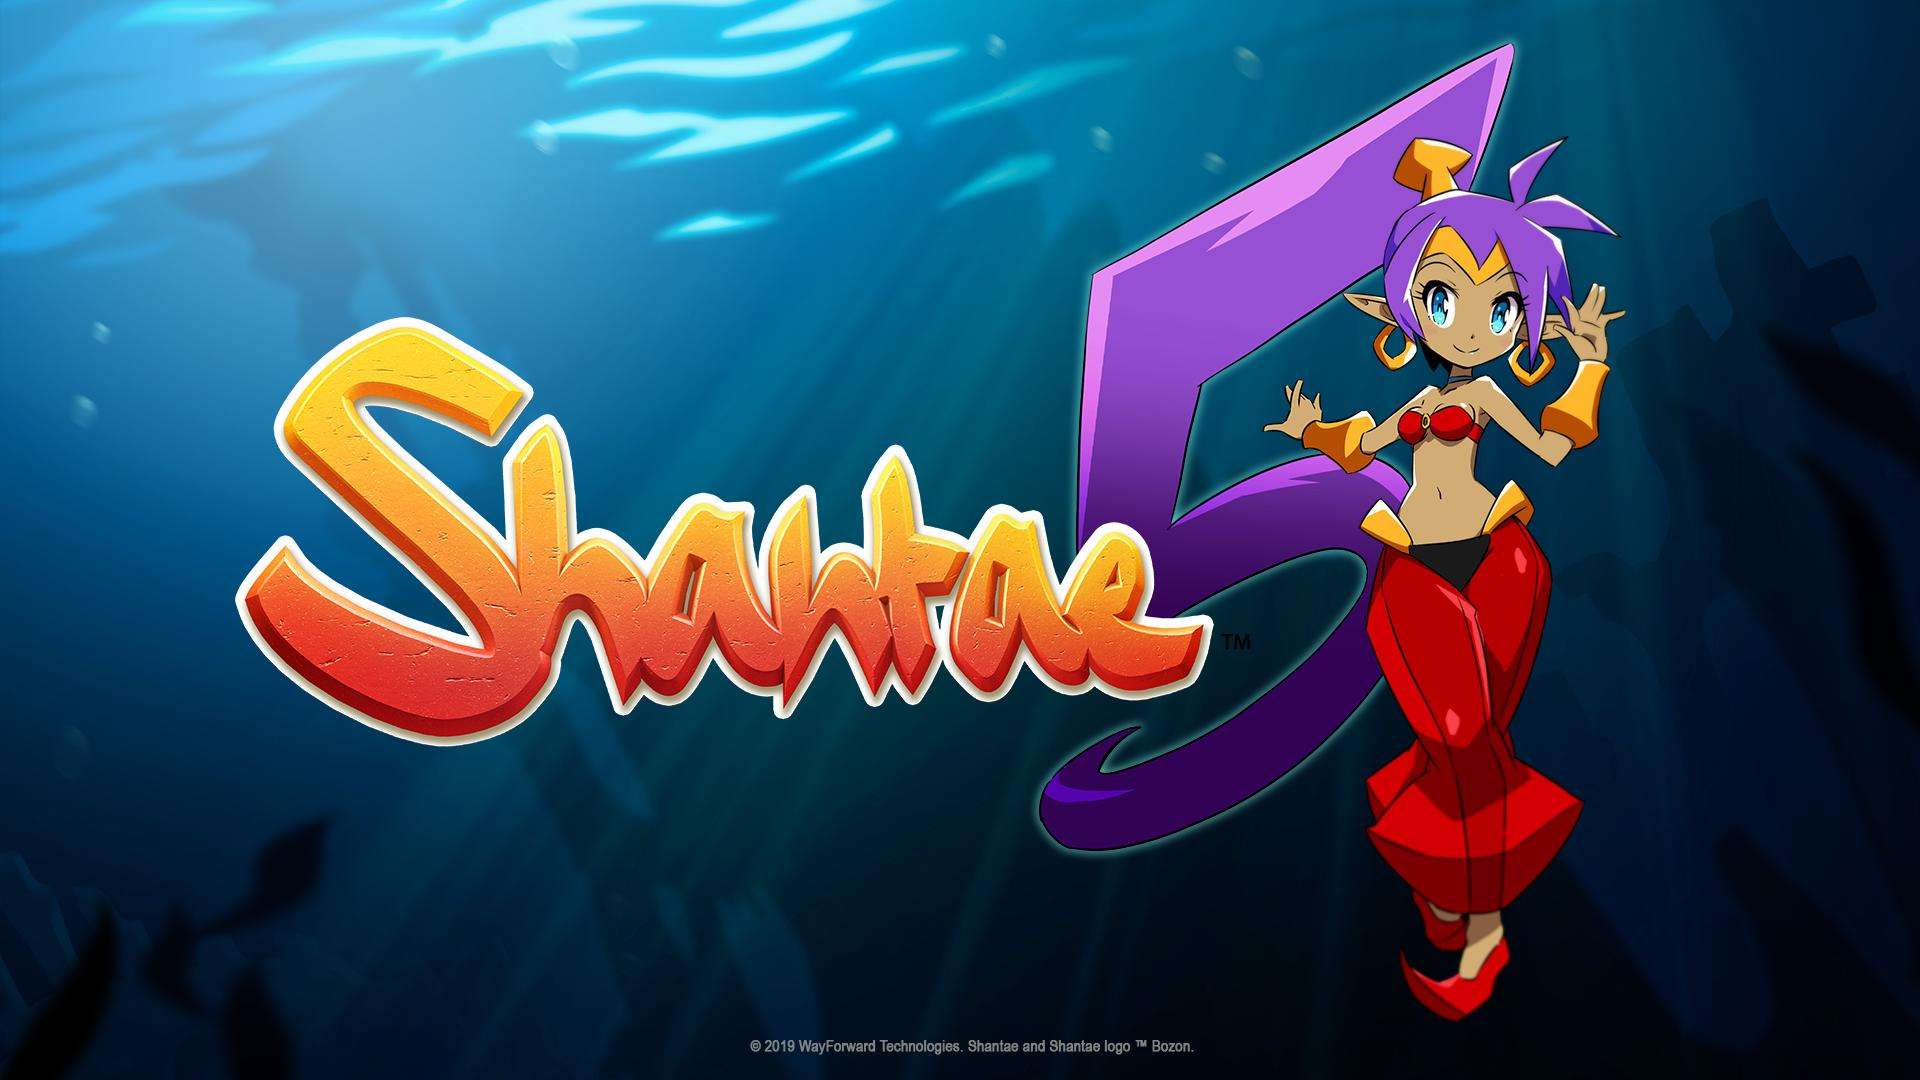 Shantae 5 comienza su desarrollo y su lanzamiento para este 2019